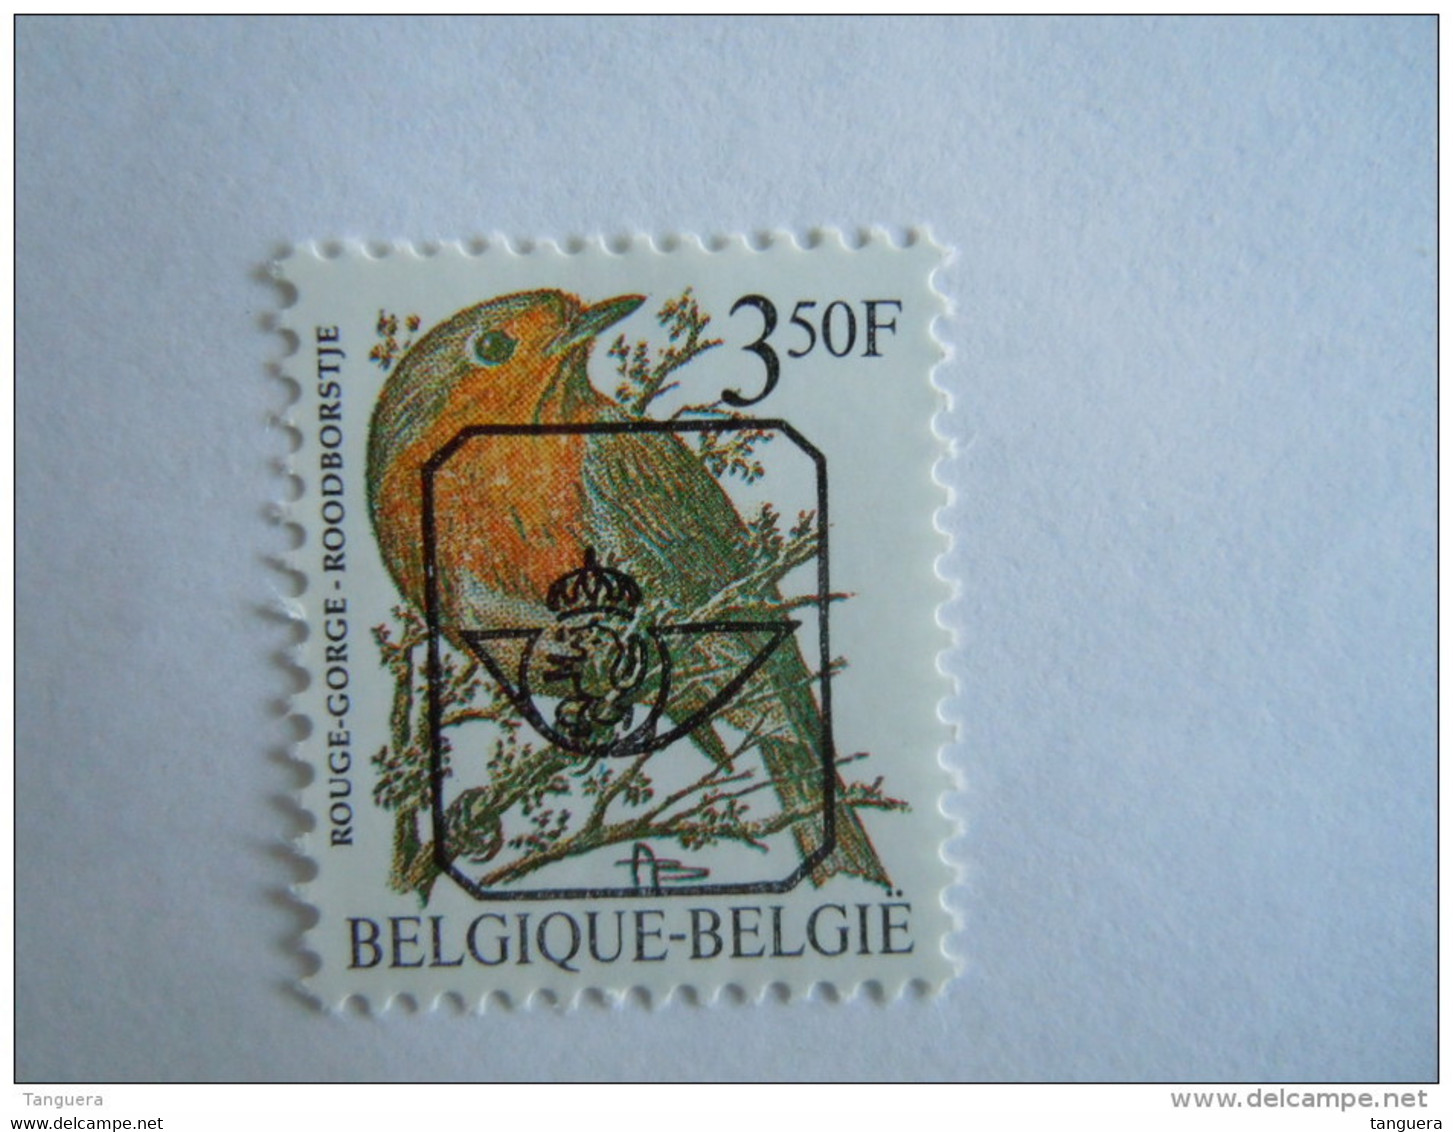 België Belgique Belgium 1986 Vogels Oiseaux Buzin Roodborstje Rouge-gorge Preo V822 GG MNH ** - Typografisch 1986-96 (Vogels)